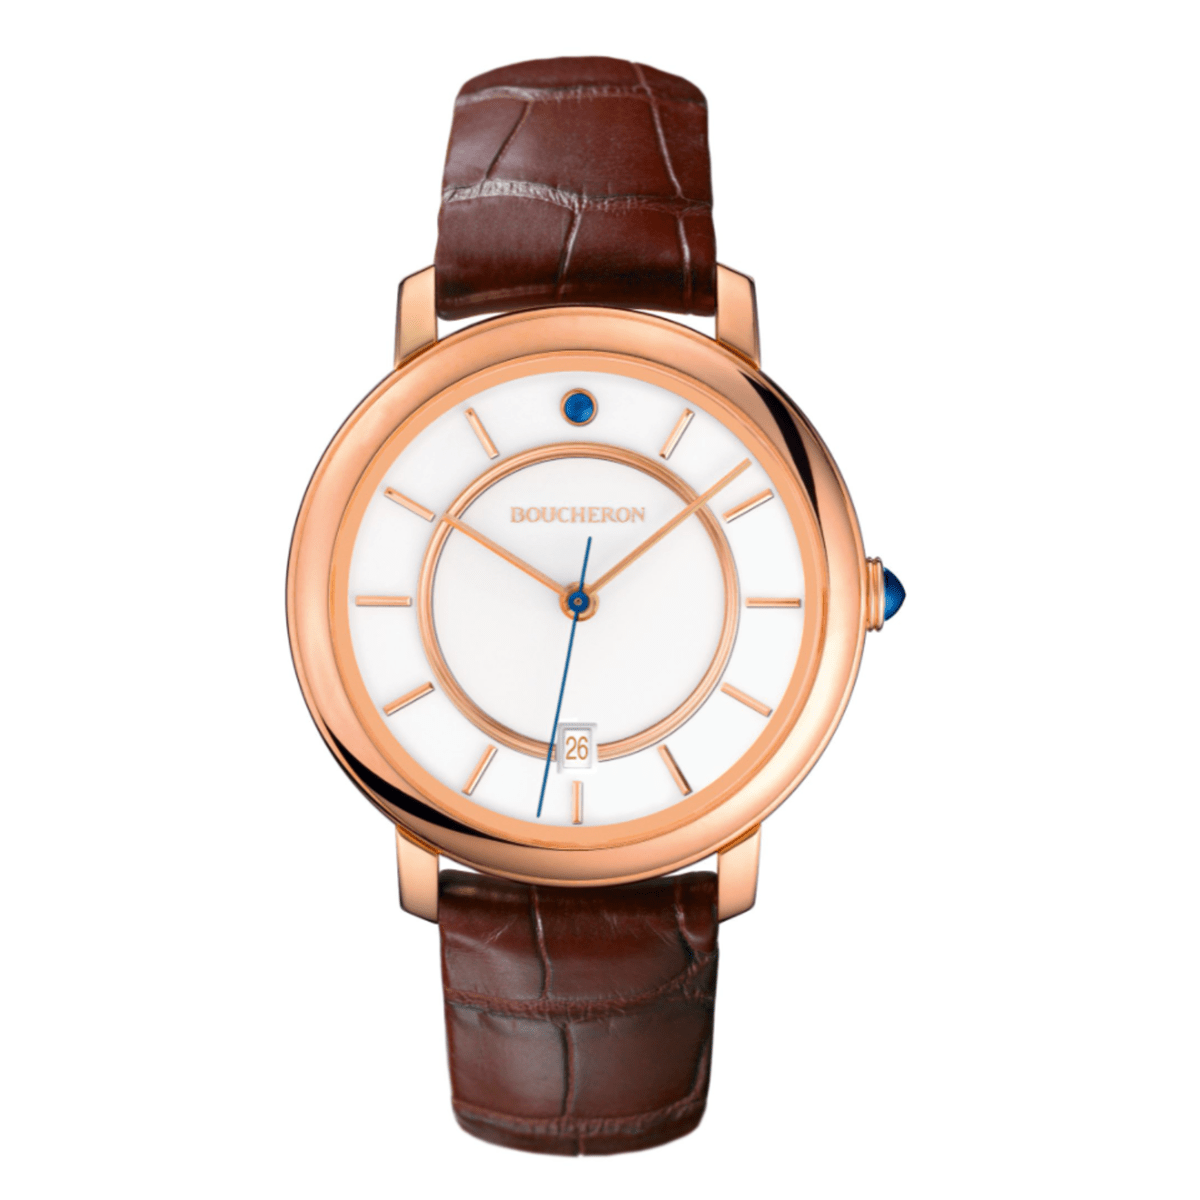 BOUCHERON Epure watch, 42mm, pink gold